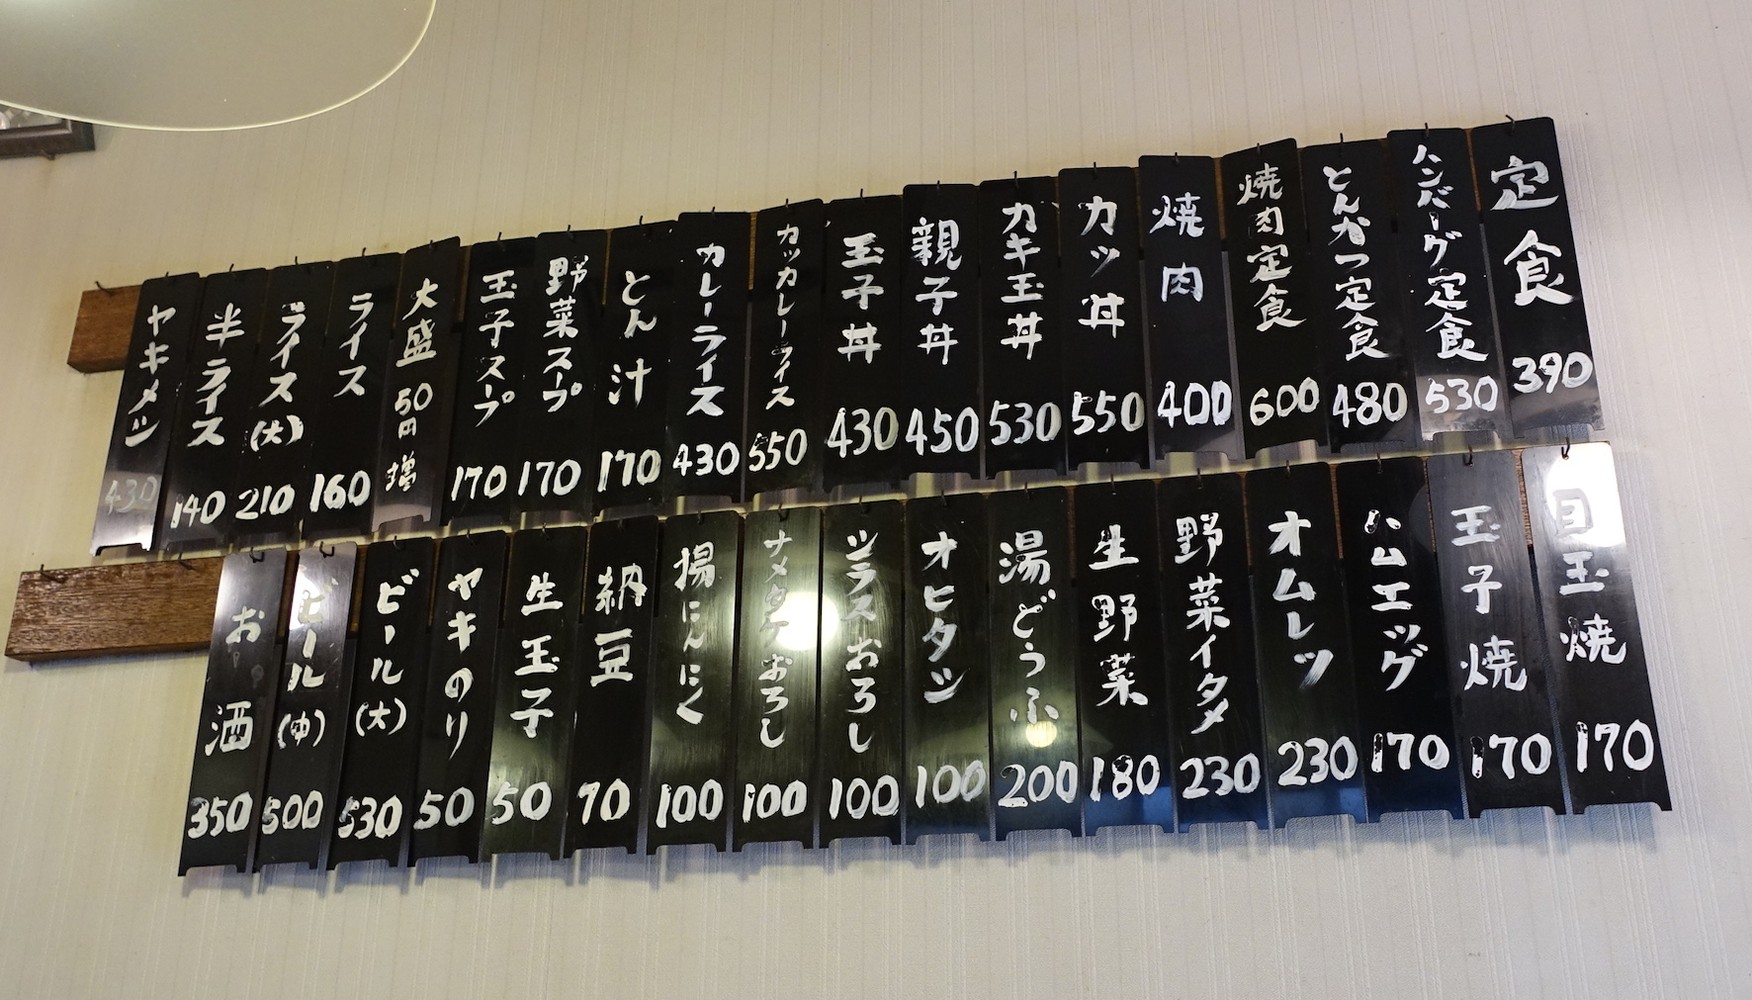 年季が入った壁のメニュー札。一番安い定食３９０円は生アゲ煮、ナスイタメなど種類も豊富